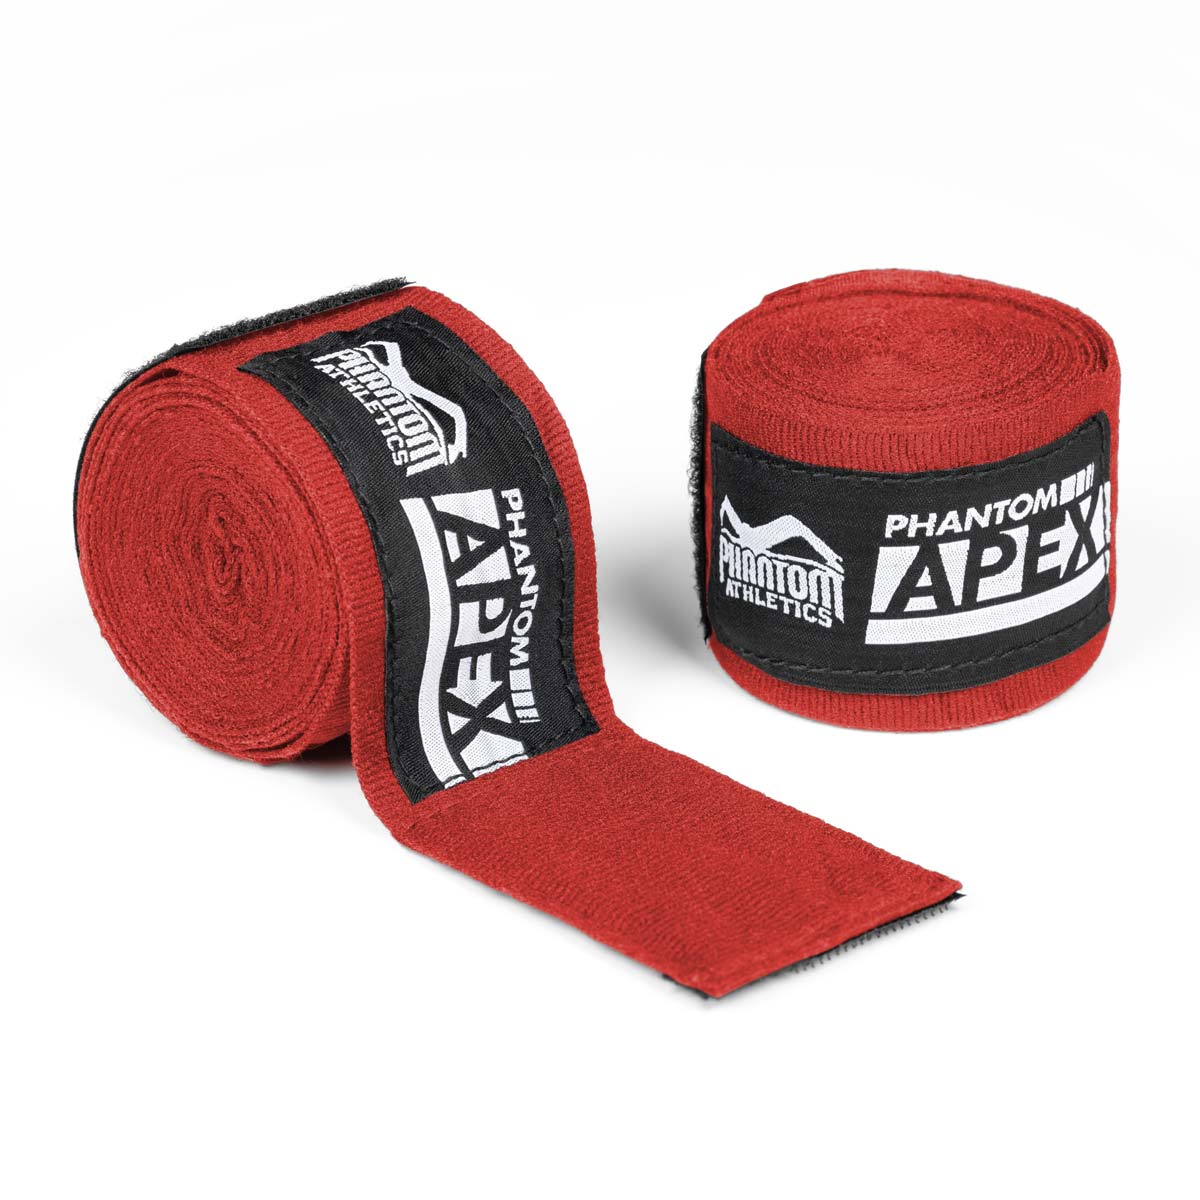 Bandagens de boxe Phantom para treinamento e competição de artes marciais. Na cor vermelha e em 2 comprimentos diferentes. Semielástico para máximo suporte e conforto.